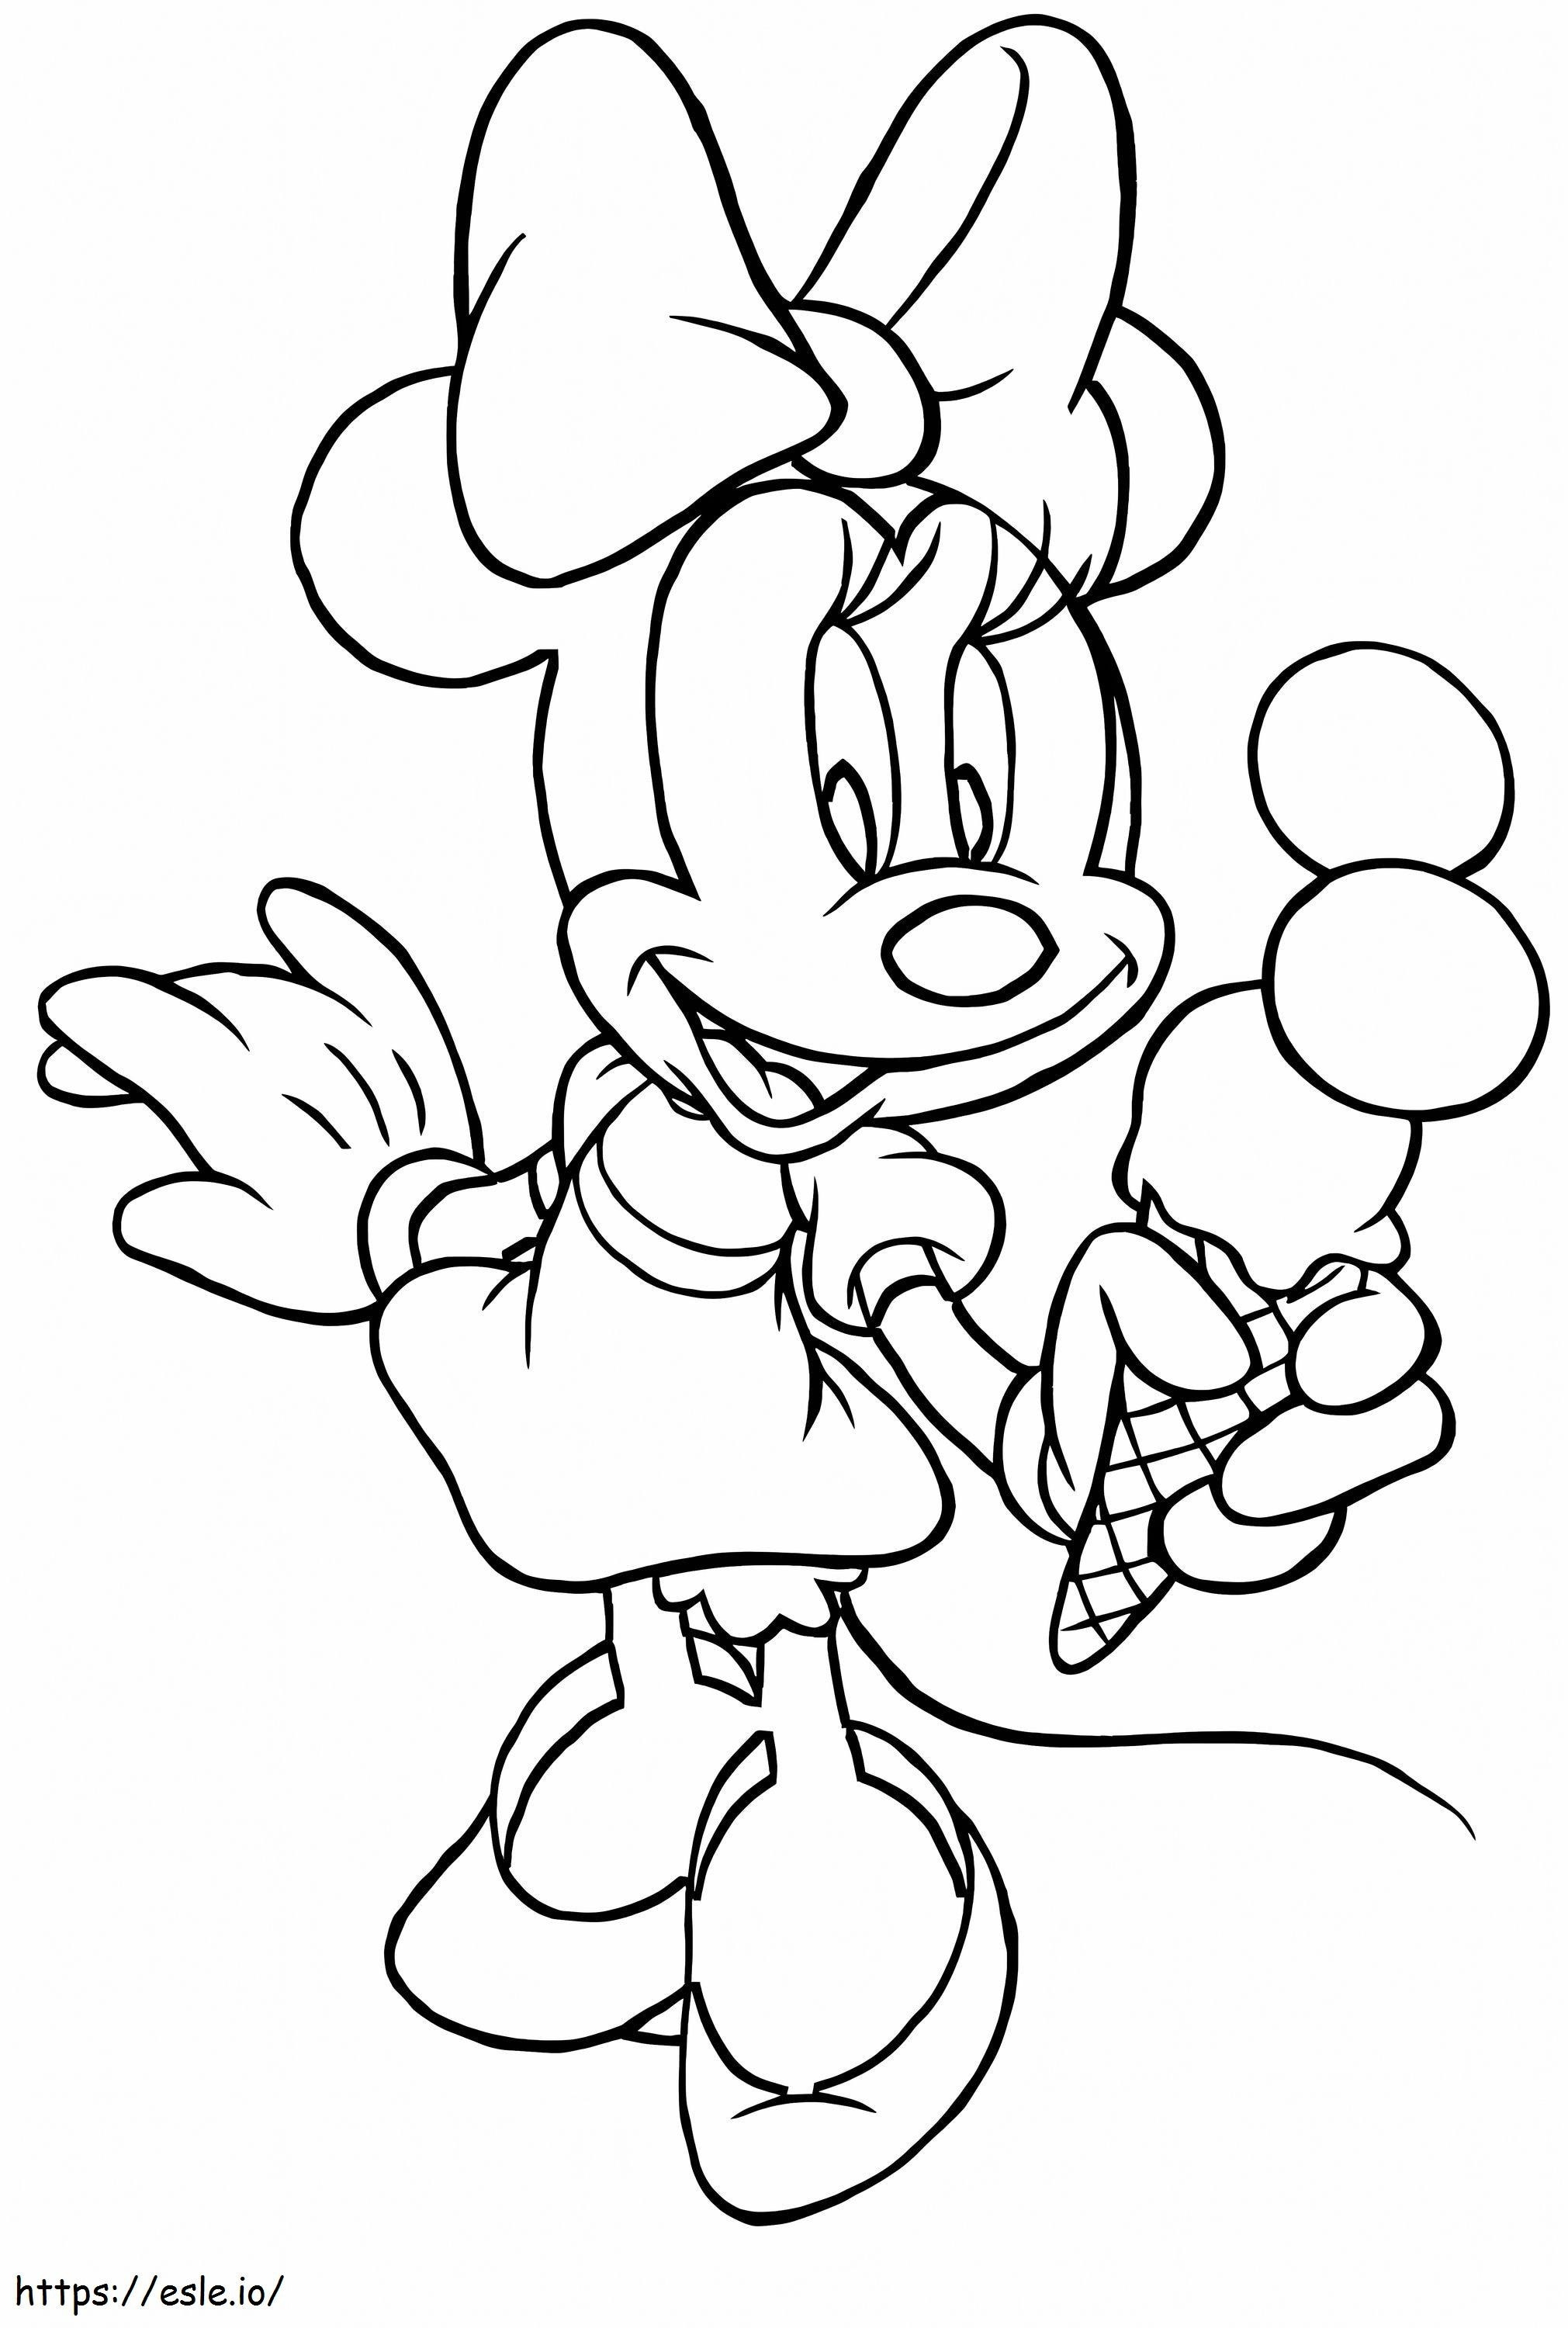 Coloriage Minnie Mouse tenant une glace à imprimer dessin